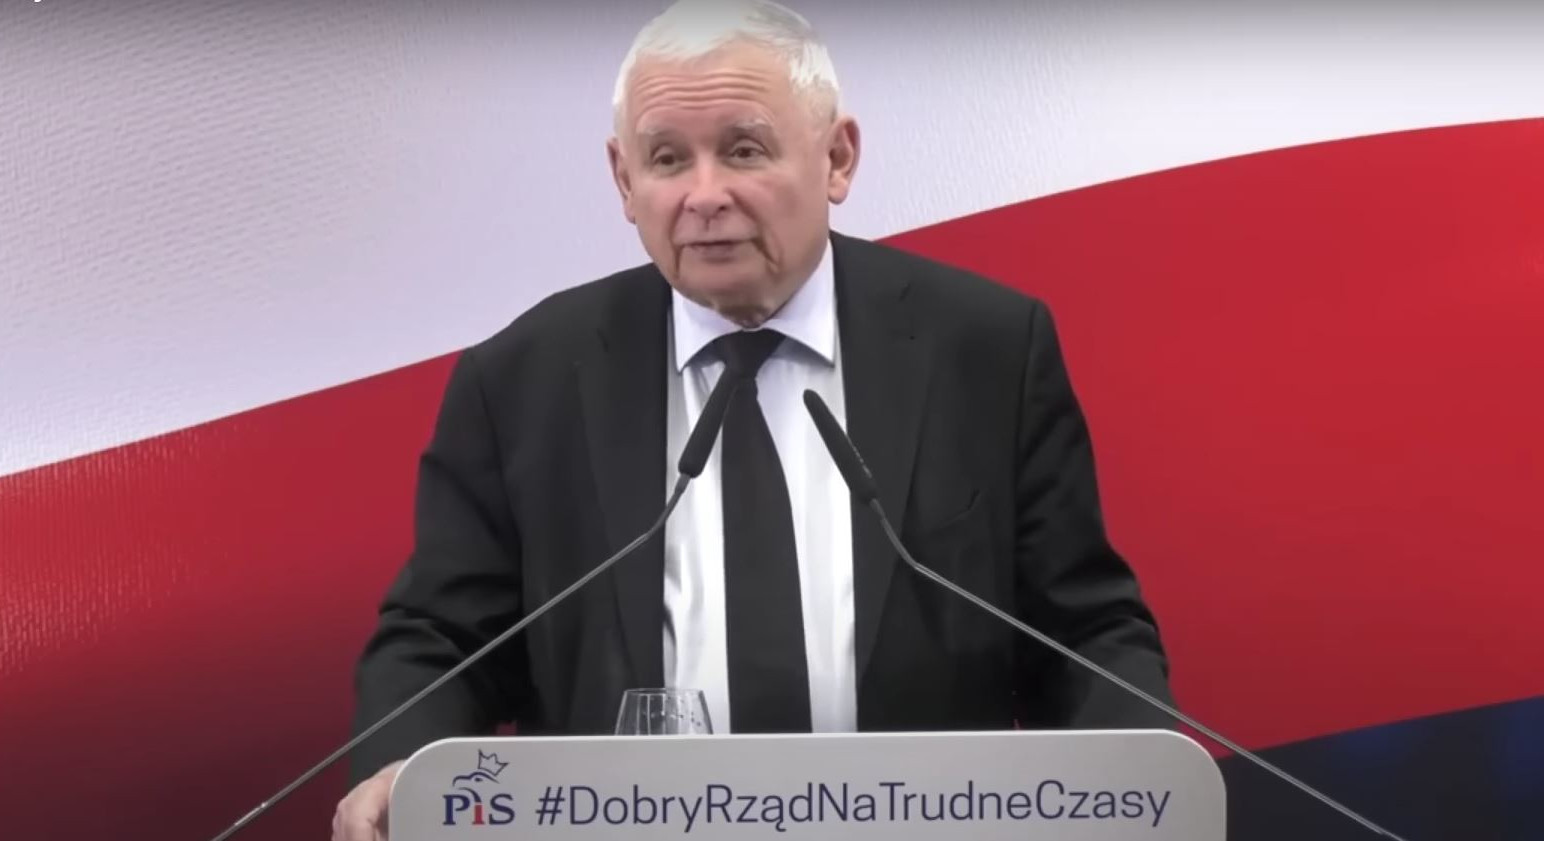 polskaracja.pl kaczyński jarosław